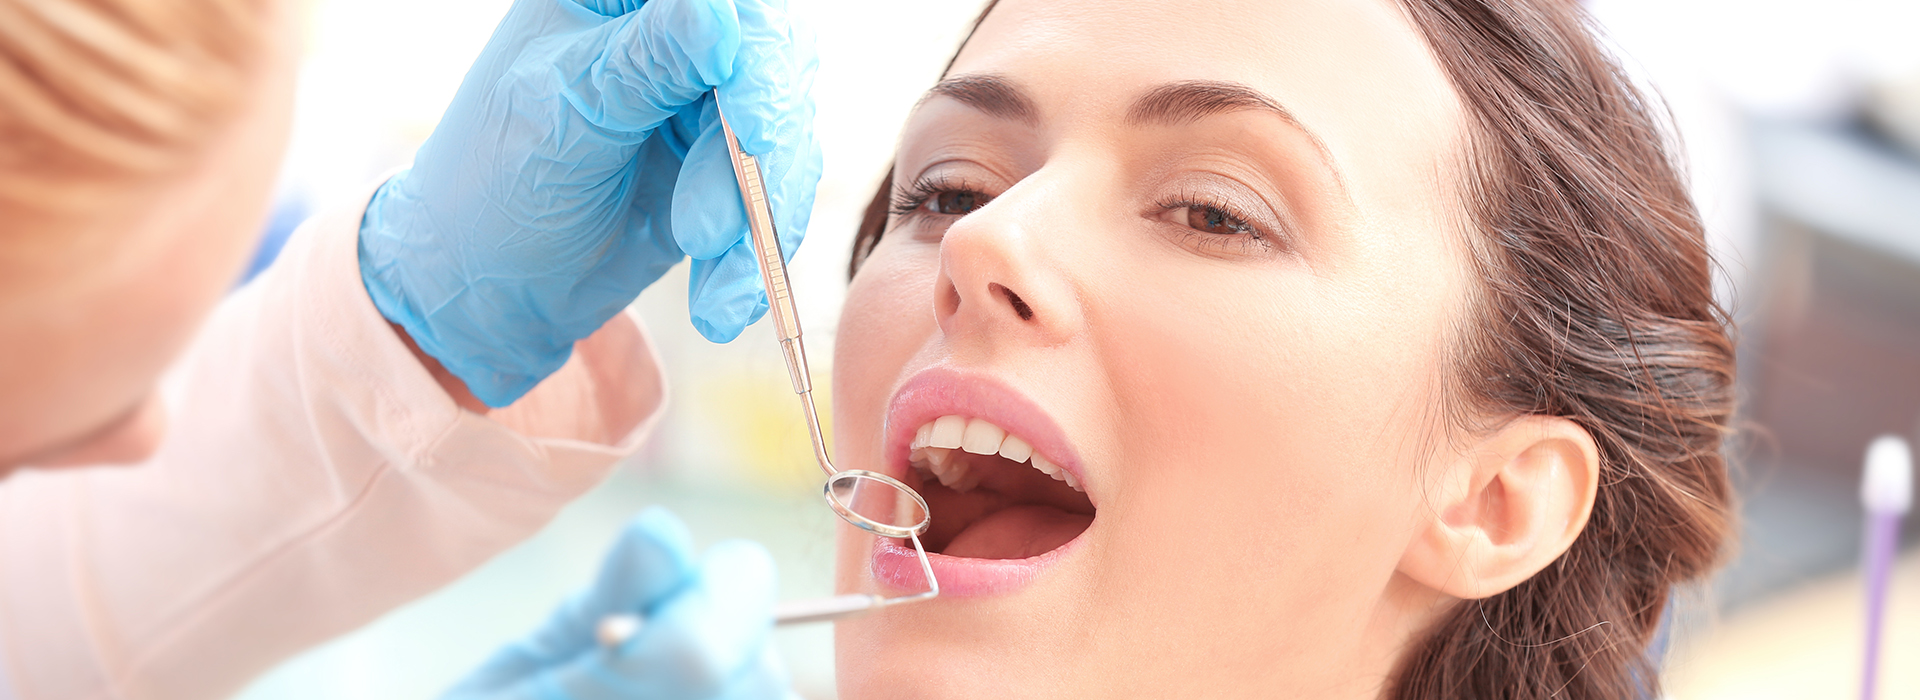 Remmers Dental | Implant Dentistry, Teeth Whitening and Veneers